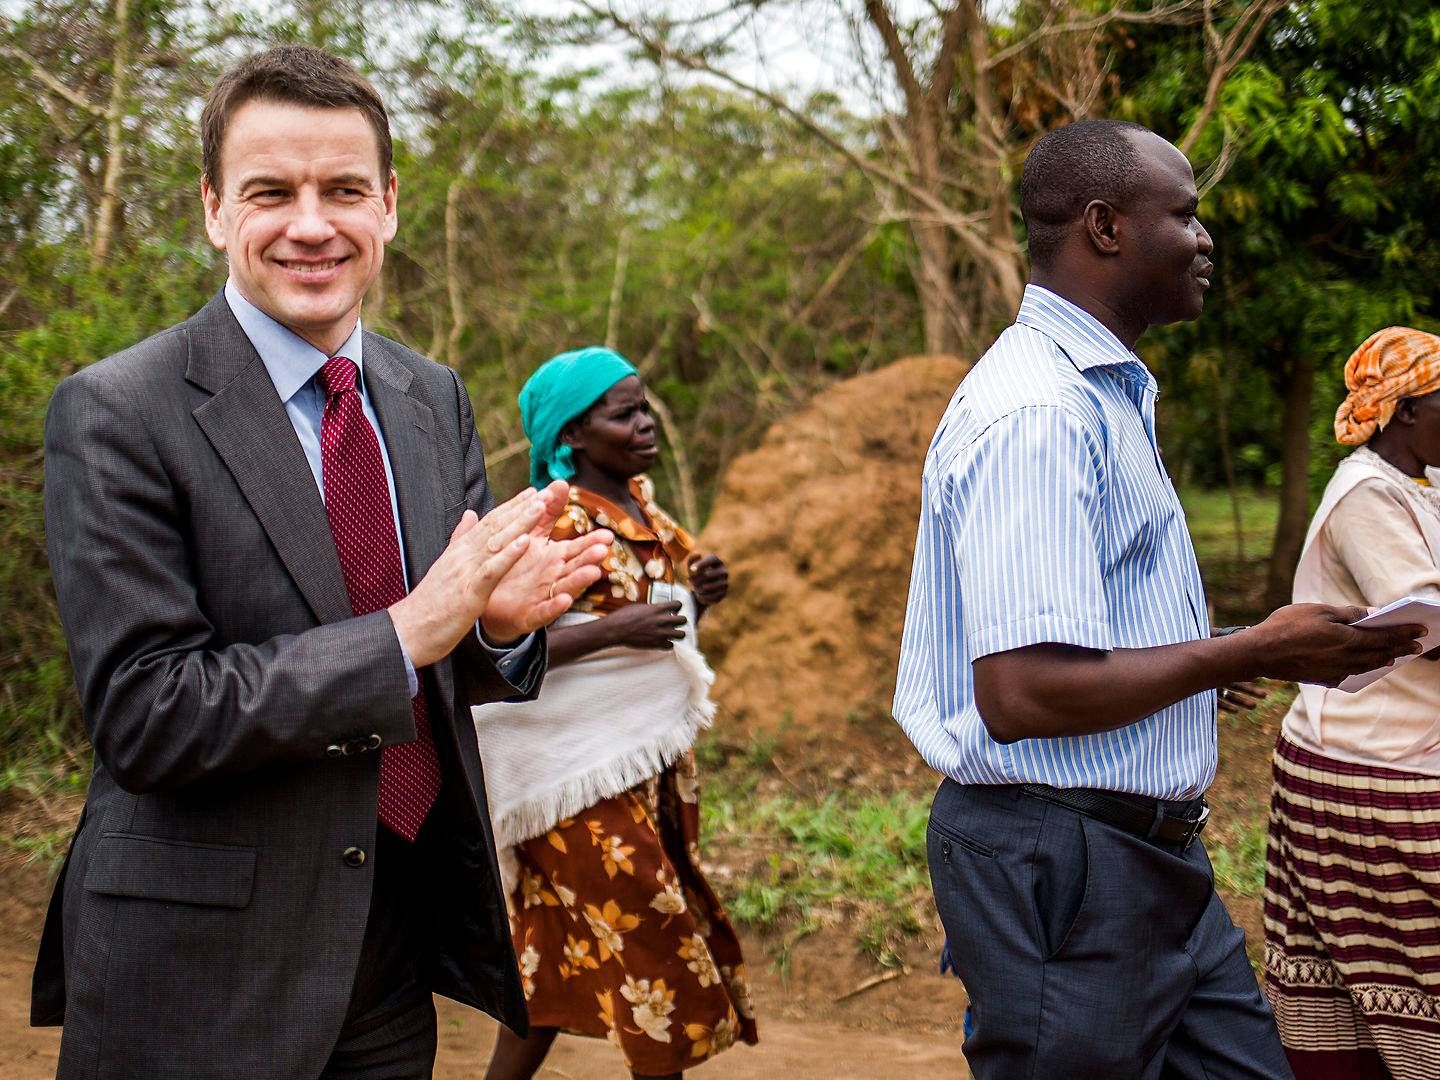 Magasinet 360 har dækket den danske udviklingsindsats i 47 år. Bl.a. da udviklingminister Christian Friis Bach var på besøg i Uganda i 2013. | Foto: Simon Fals/Politiken/Ritzau Scanpix